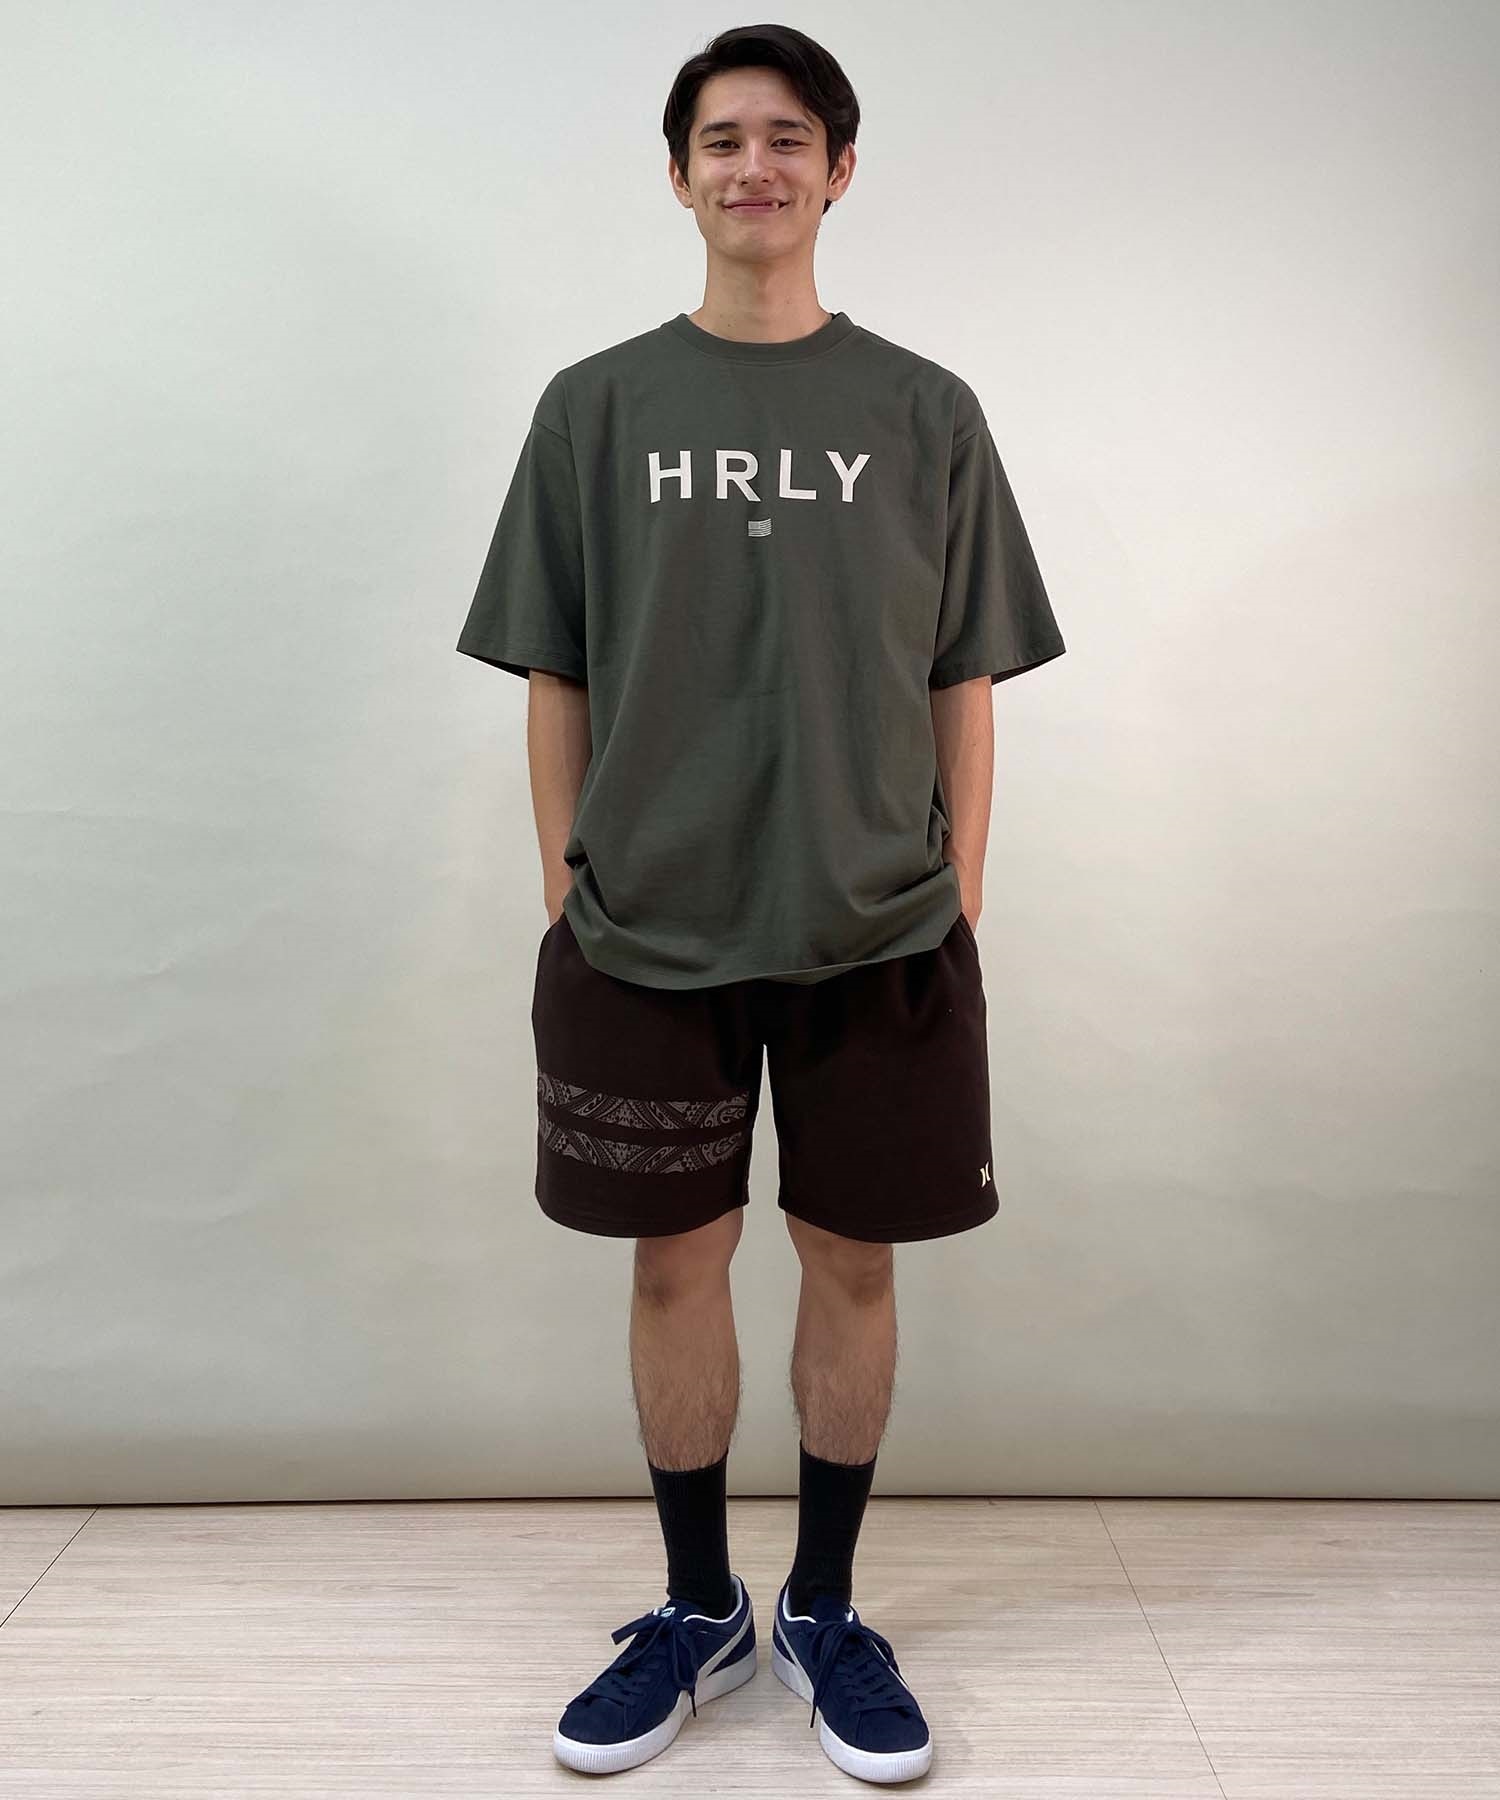 【マトメガイ対象】Hurley ハーレー OVERSIZED HURLEY SHORT SLEEVE TEE メンズ 半袖 Tシャツ MSS2411020(OLV-S)